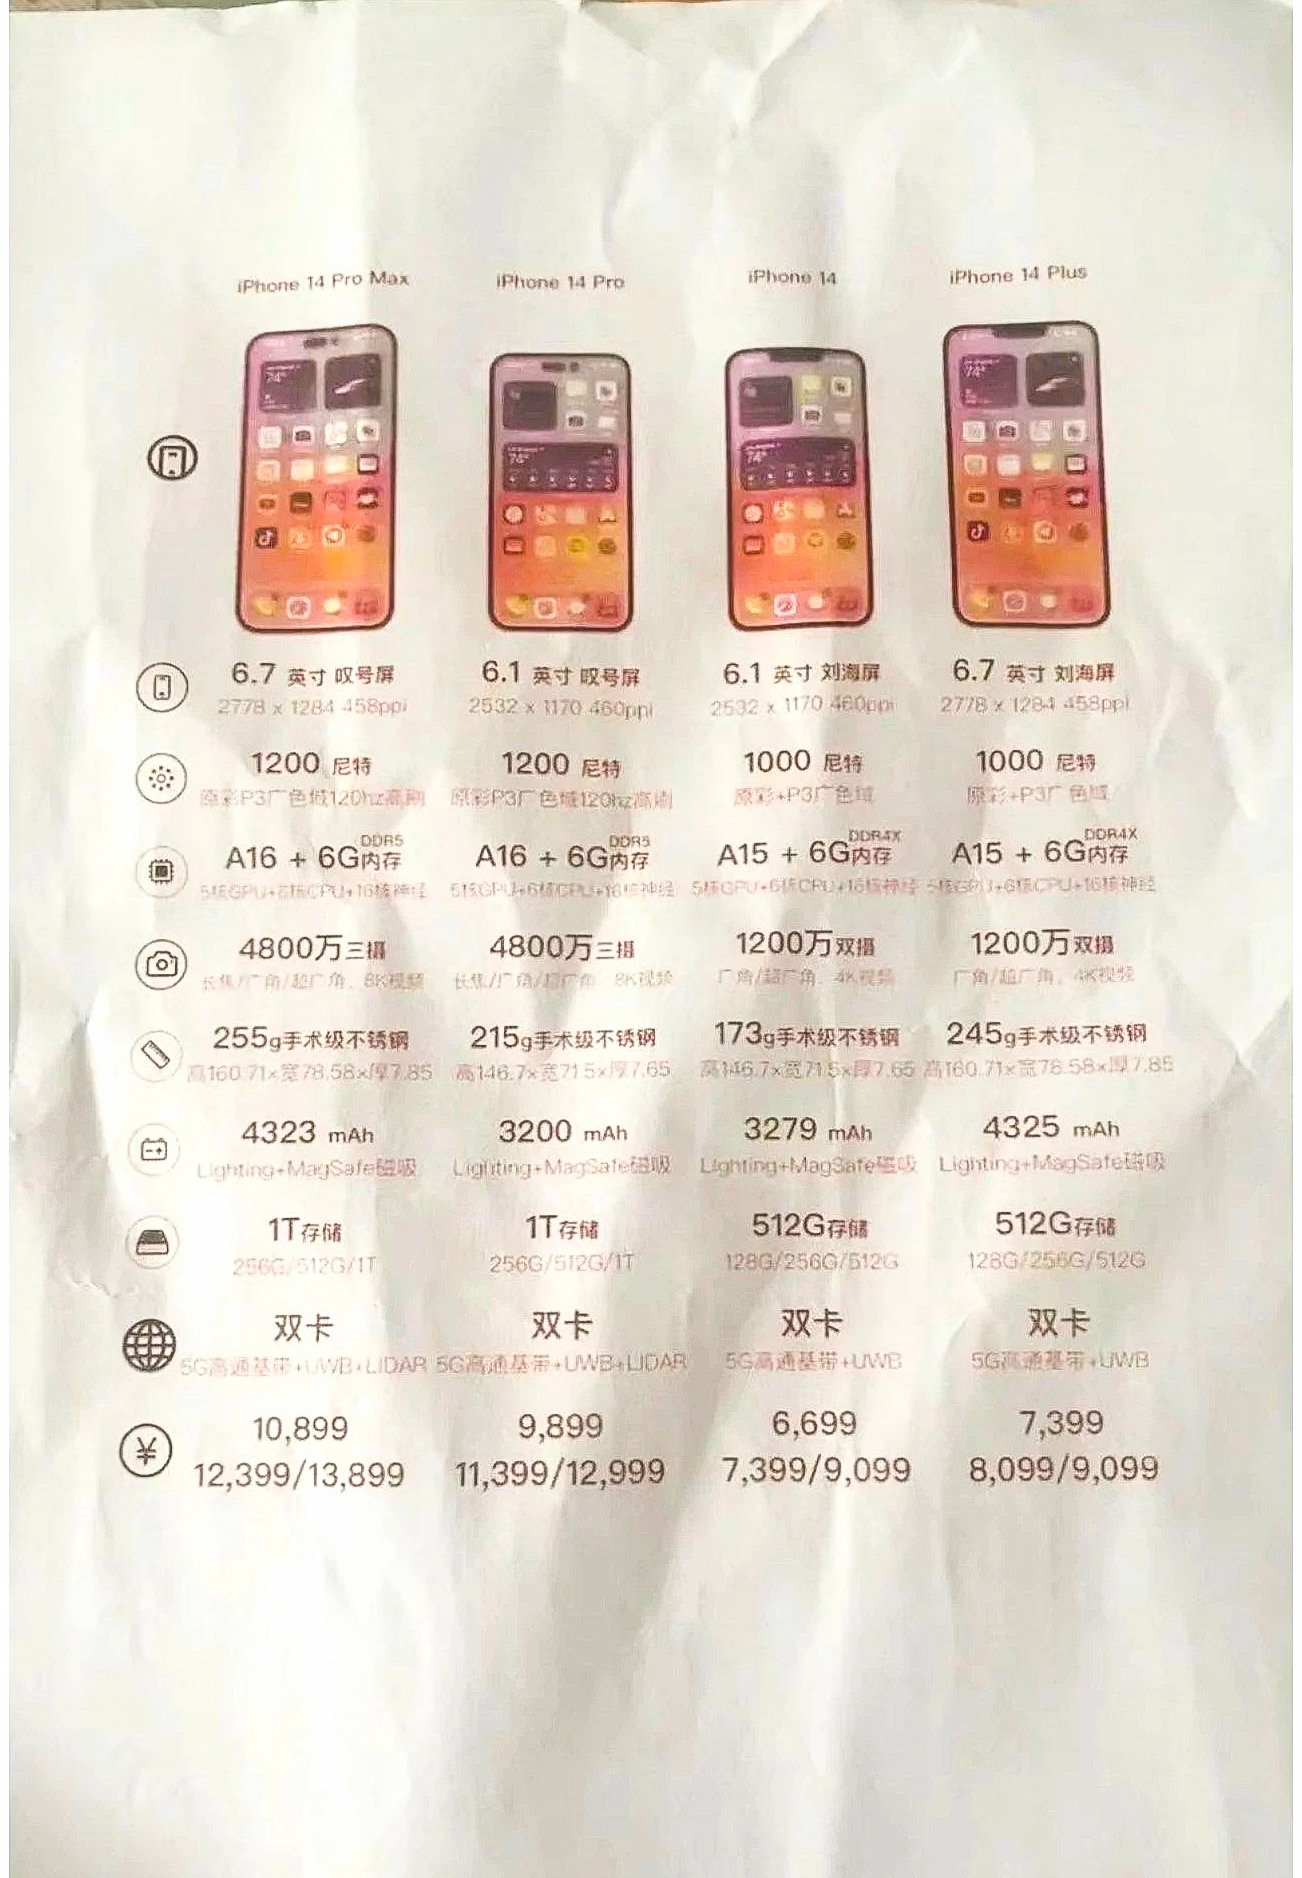 iPhone 14 khi nào ra mắt tại Việt Nam? Ngày 14/10 mở bán